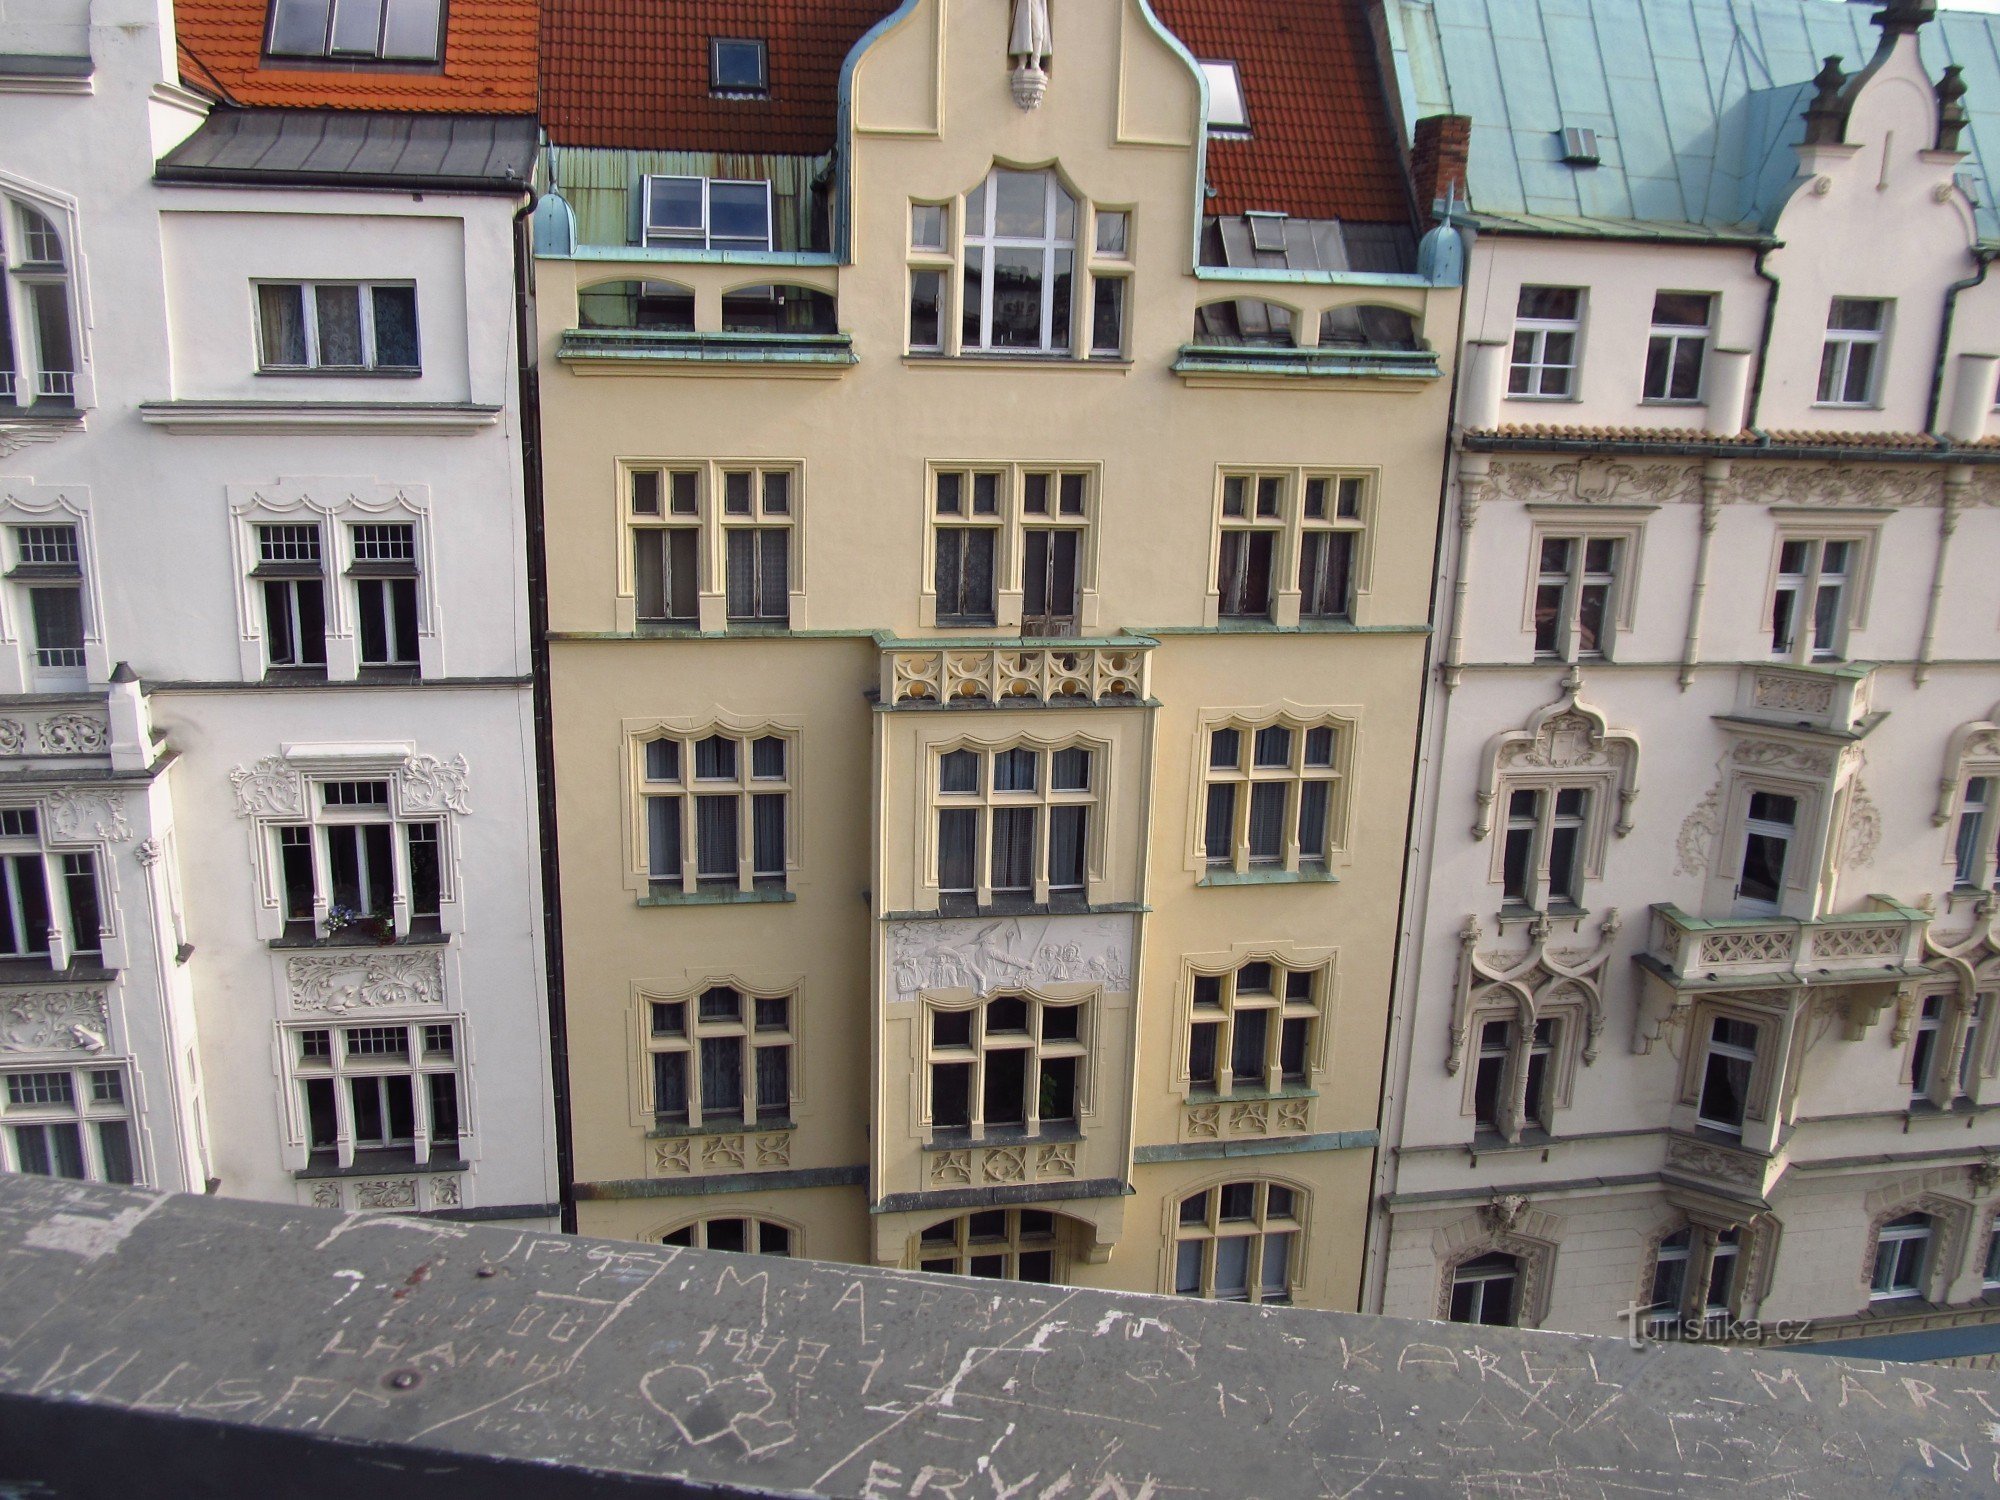 Udsigt fra terrassen i restauranten på øverste etage i Kotva stormagasin i Prag